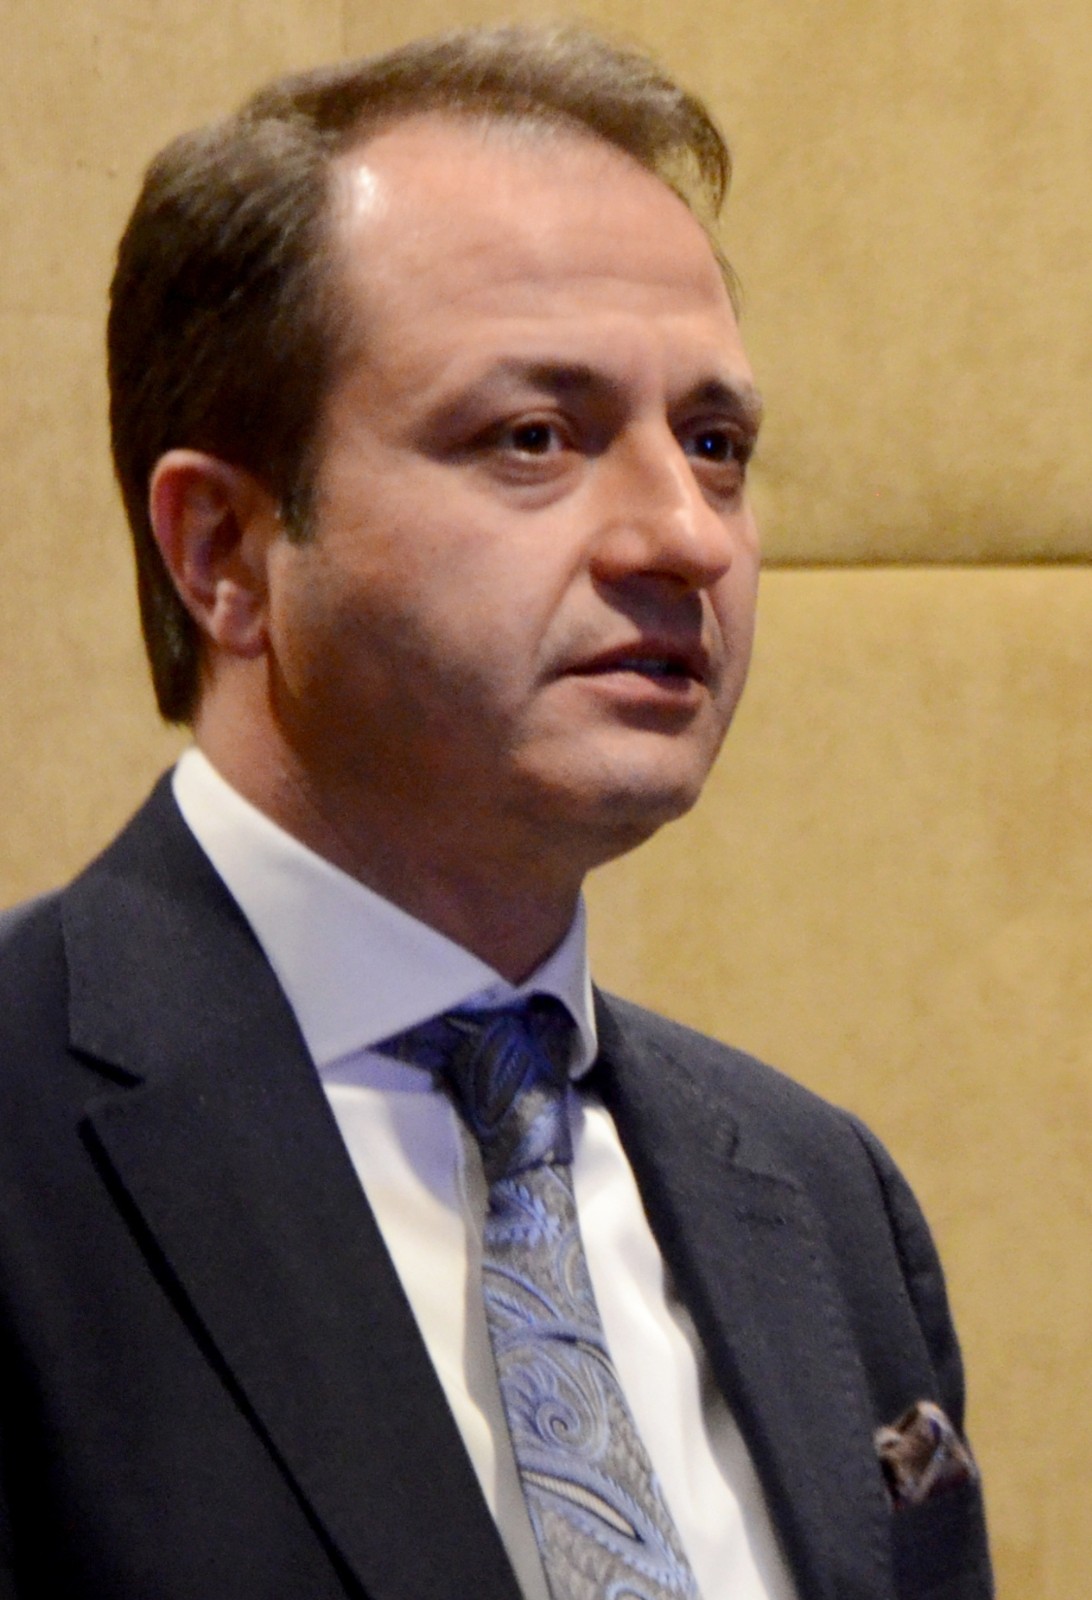 ERÇİMSAN Holding İcra Kurulu Başkanı Fatih Yücelik Türk Çimento’nun yeni başkanı oldu